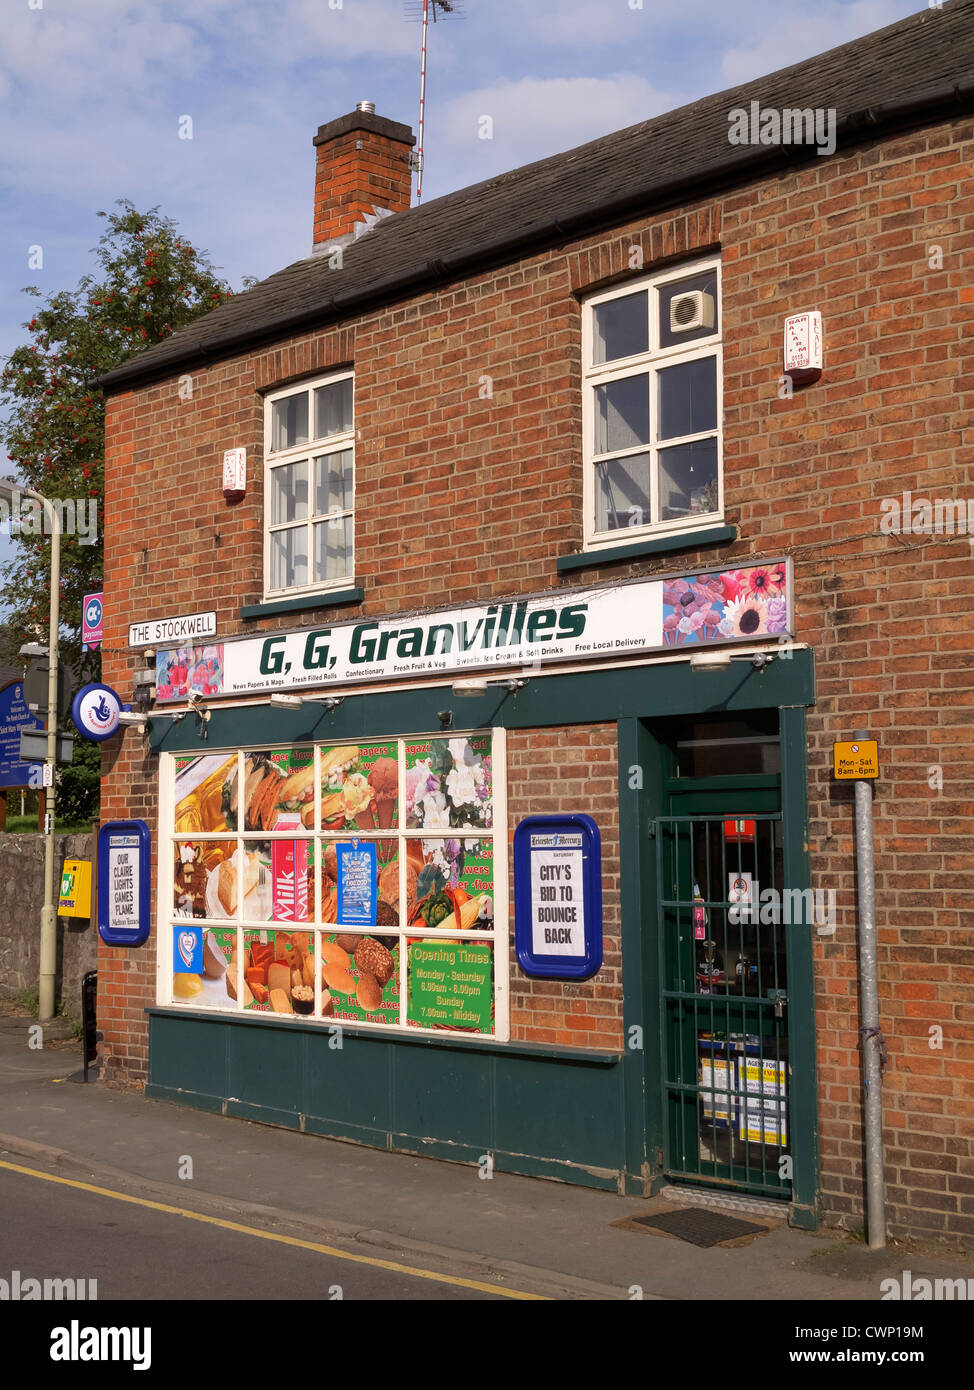 La boutique sign amusant inspiré par la série TV "ouvrir toutes les heures où Ronnie Barker bégaie son coin shop Nom de l'assistant de Granville Banque D'Images